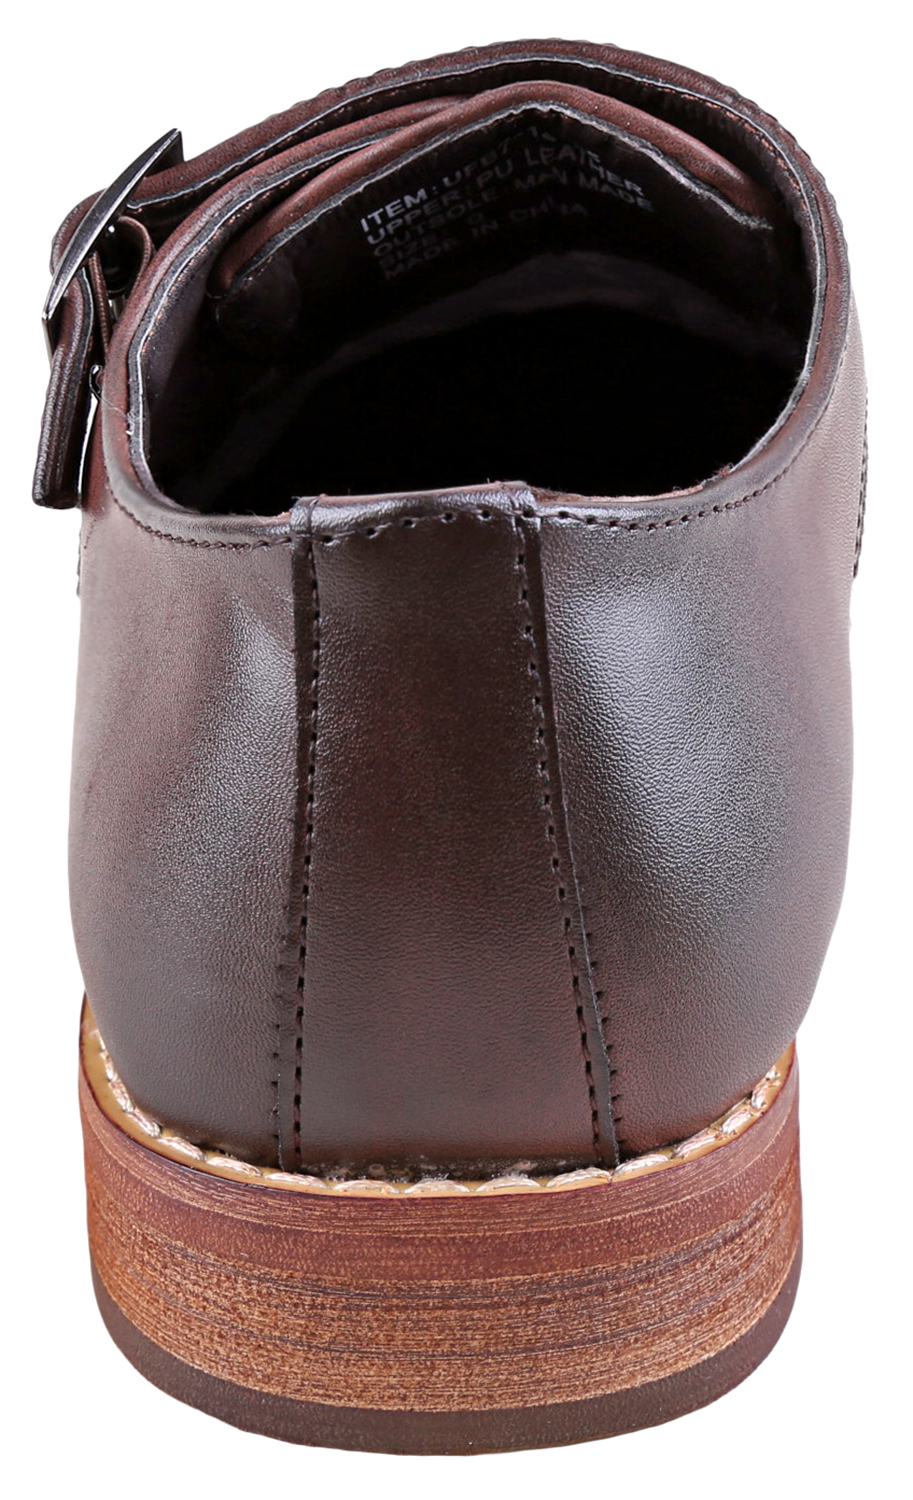 Urban Fox Allen Men's Dress Shoe | Double Monk Strap | Brogue | Wingtip Shoes for Men | Dark Brown 11 M US - image 4 of 7